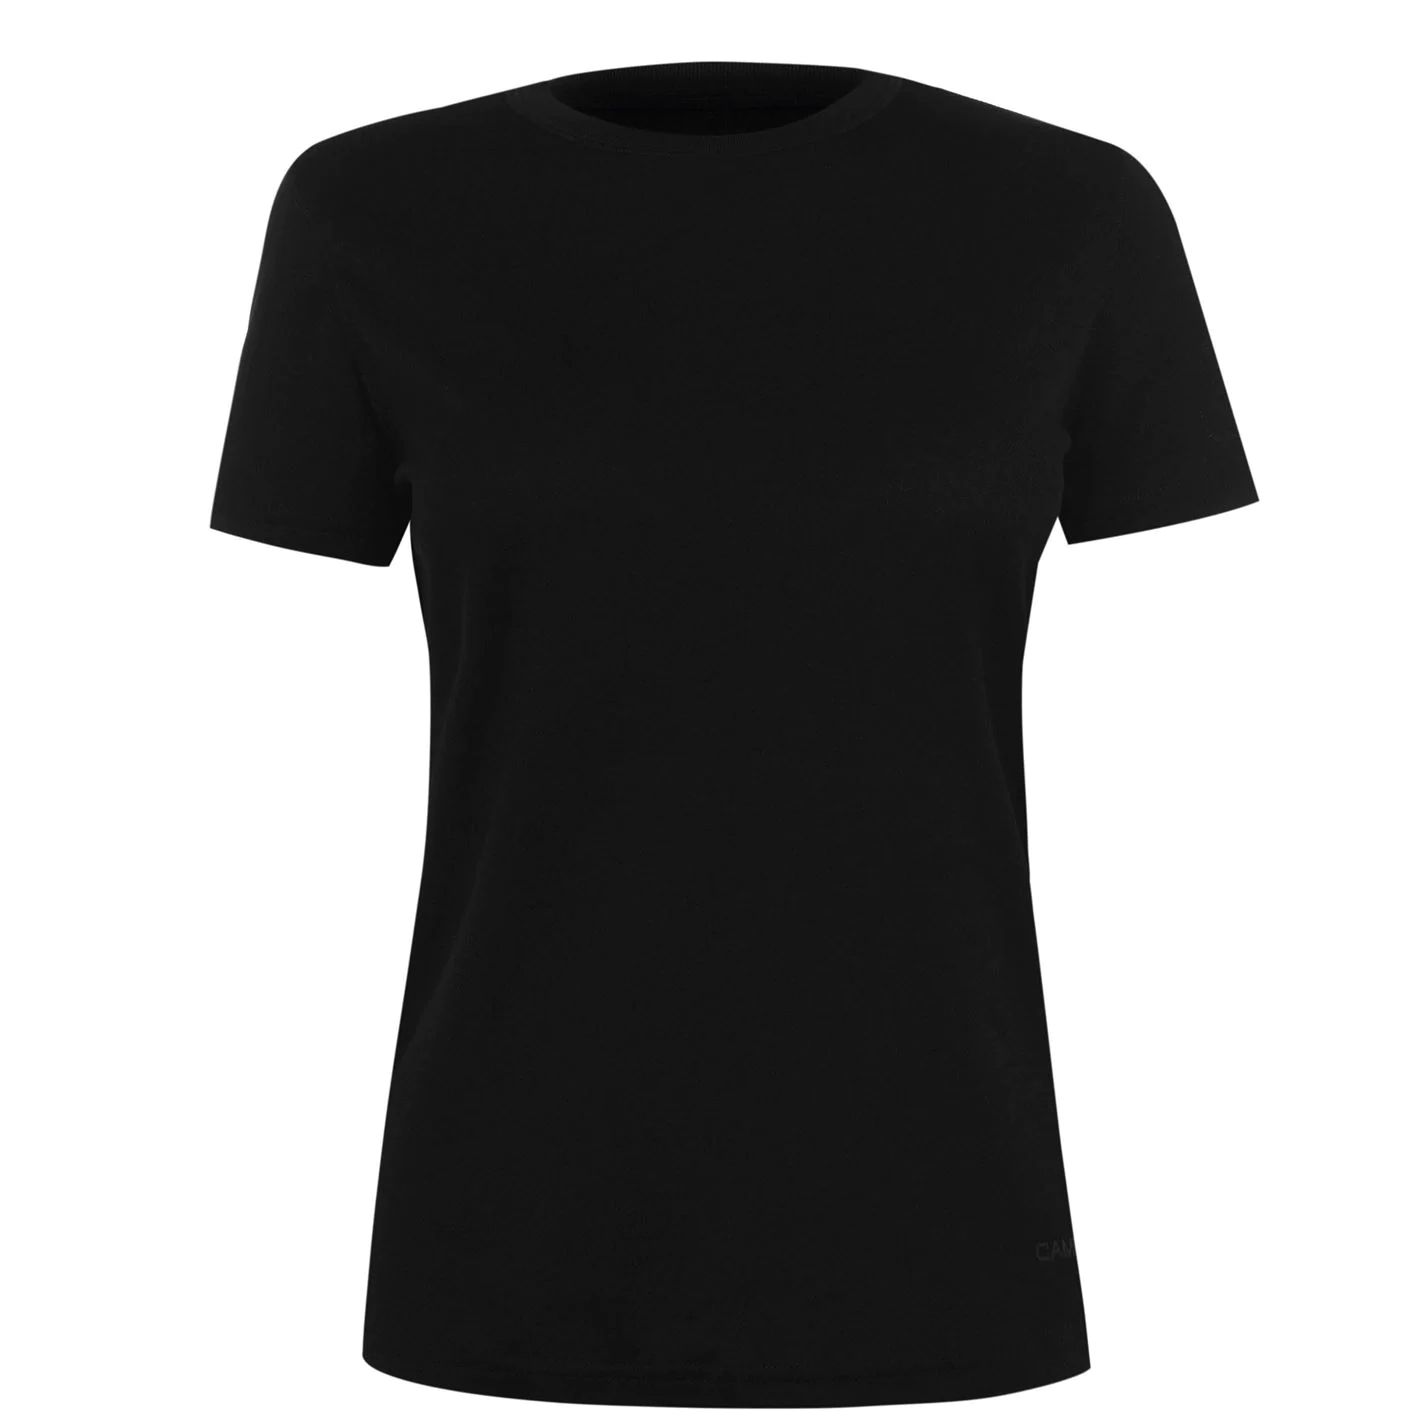 dámské funkční termo tričko CAMPRI - BLACK - L